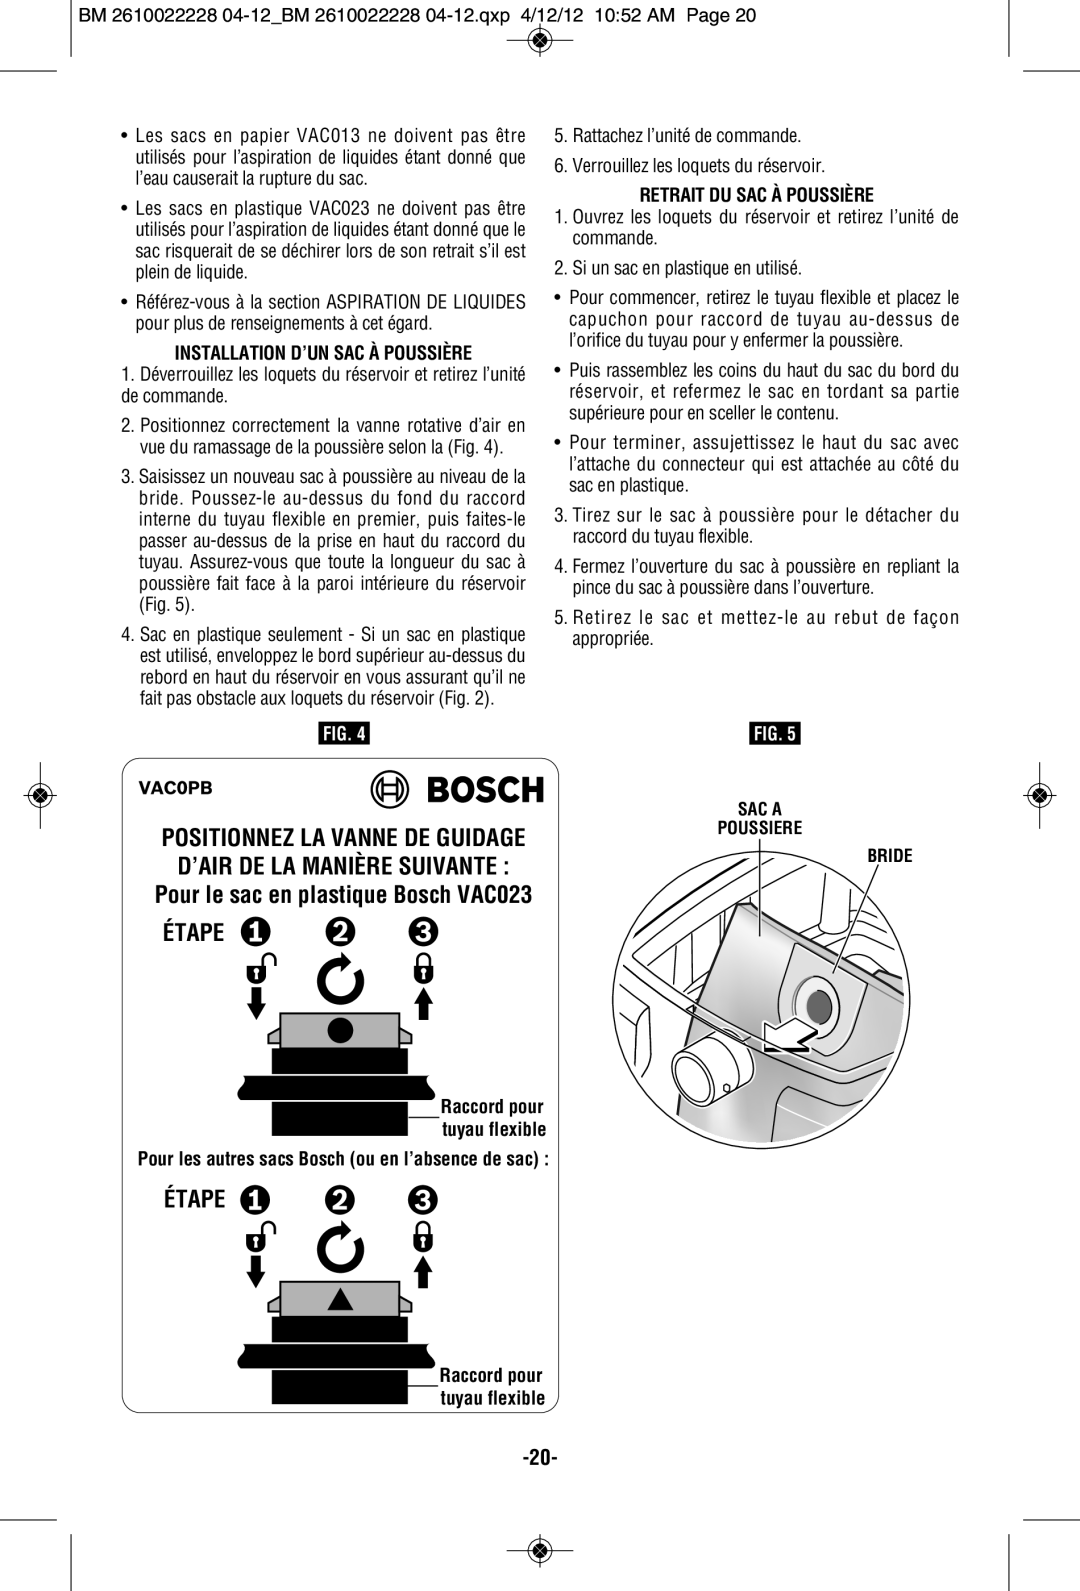 Bosch Power Tools 3931A-PB manual Pour le sac en plastique Bosch VAC023 ÉTAPE, Étape, Installation D’Un Sac À Poussière 